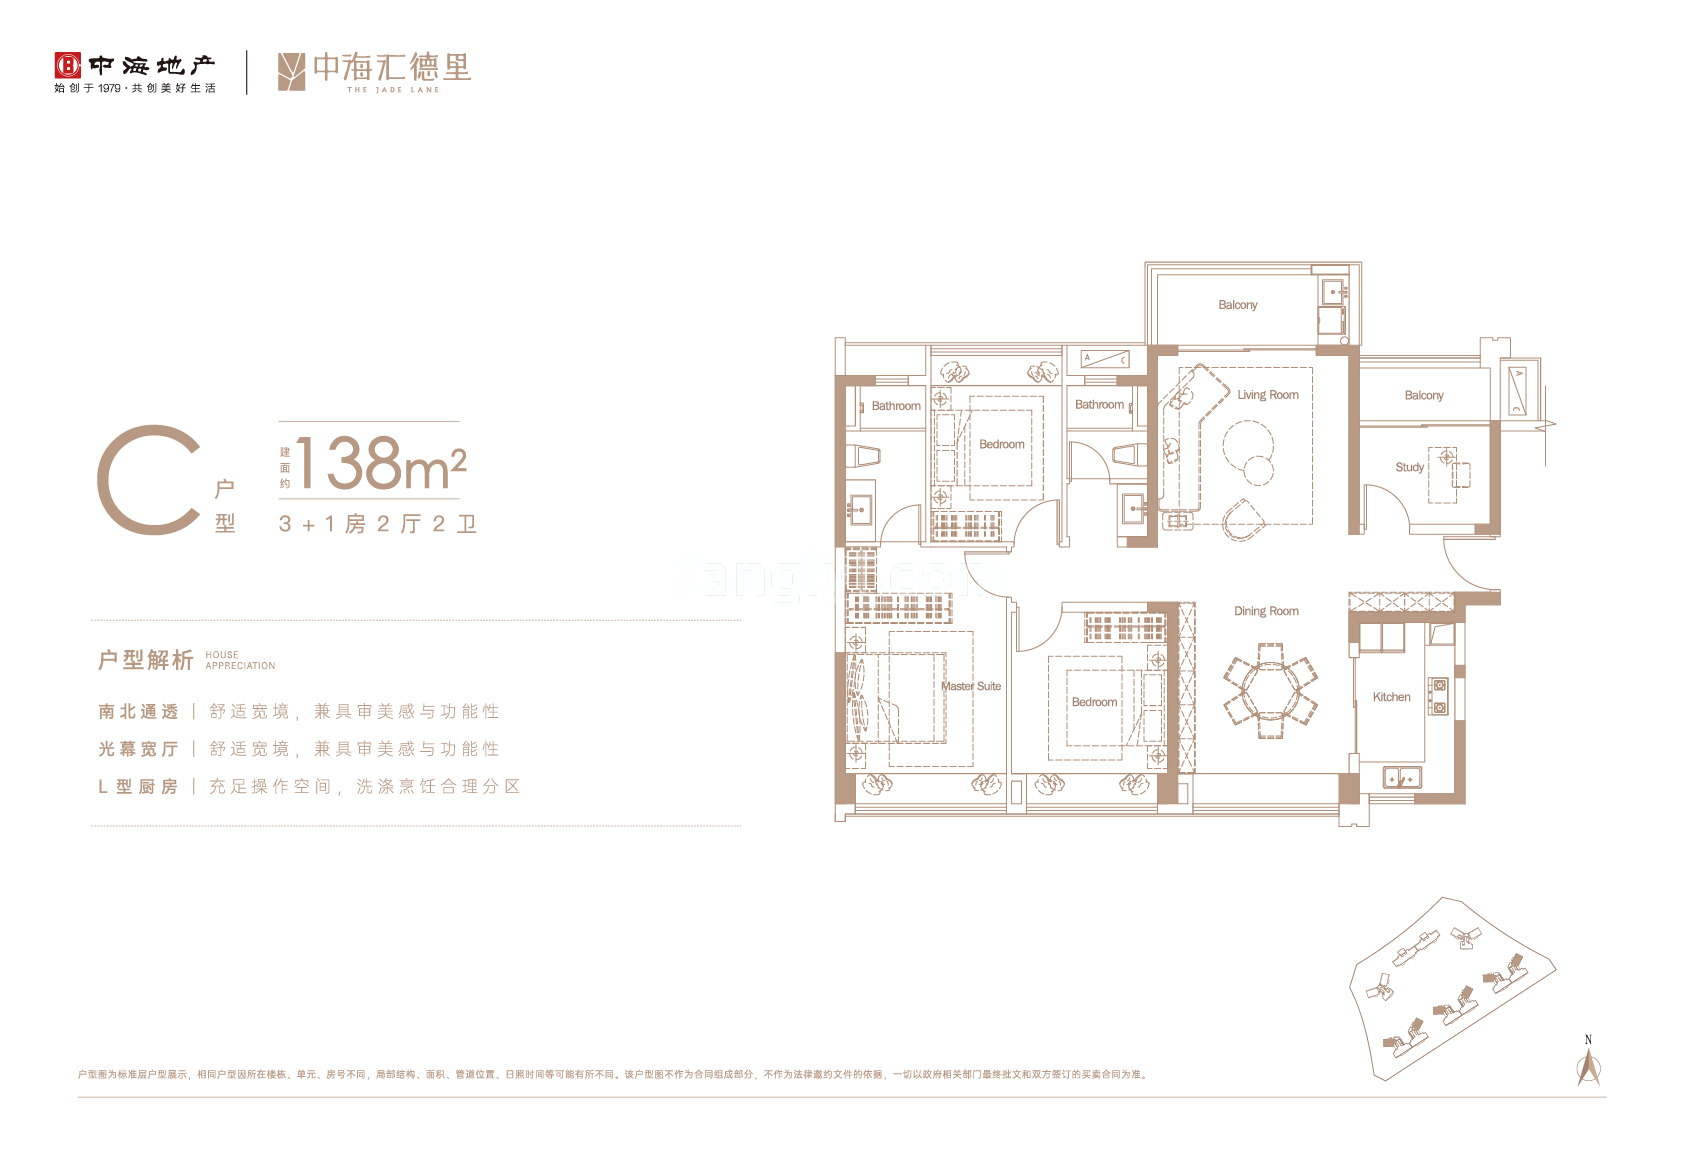 中海汇德里 高层 C户型 3+1房2厅2卫 建筑面积138㎡